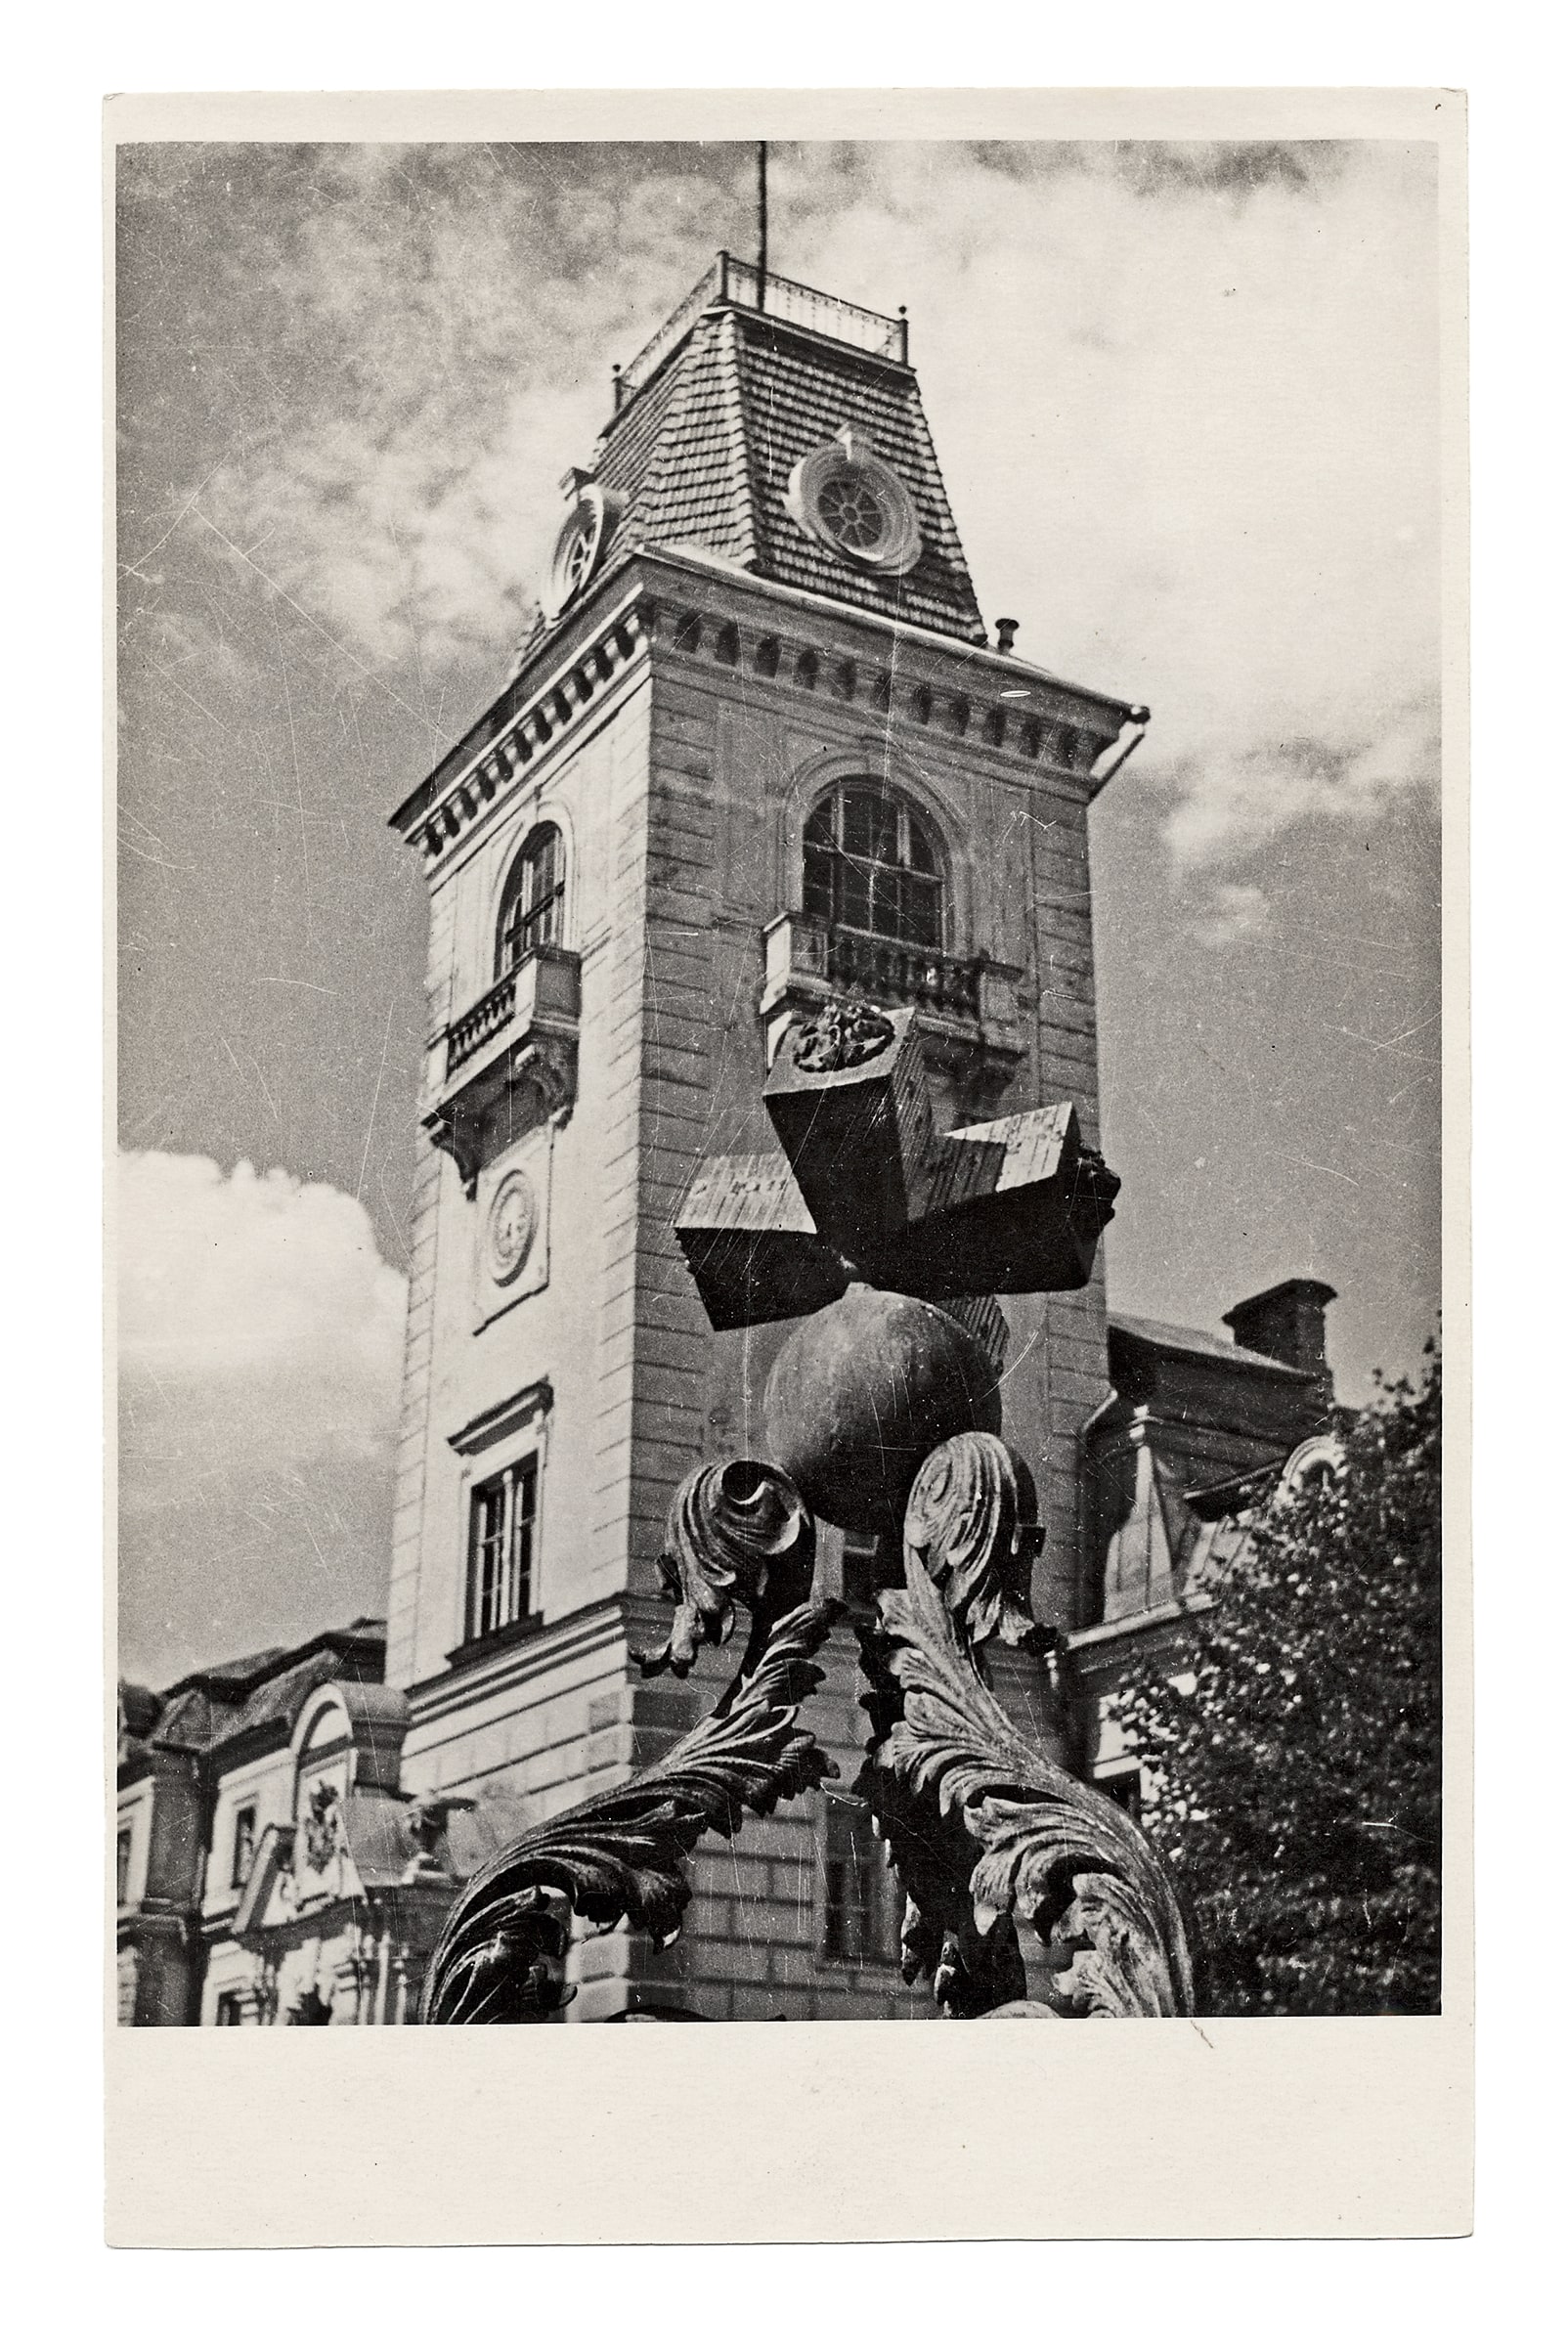 Kėdainių dvaro rūmų bokštas ir saulės laikrodis, 1930 m. 1944 liepos 30 d. rūmai susprogdinti nacių